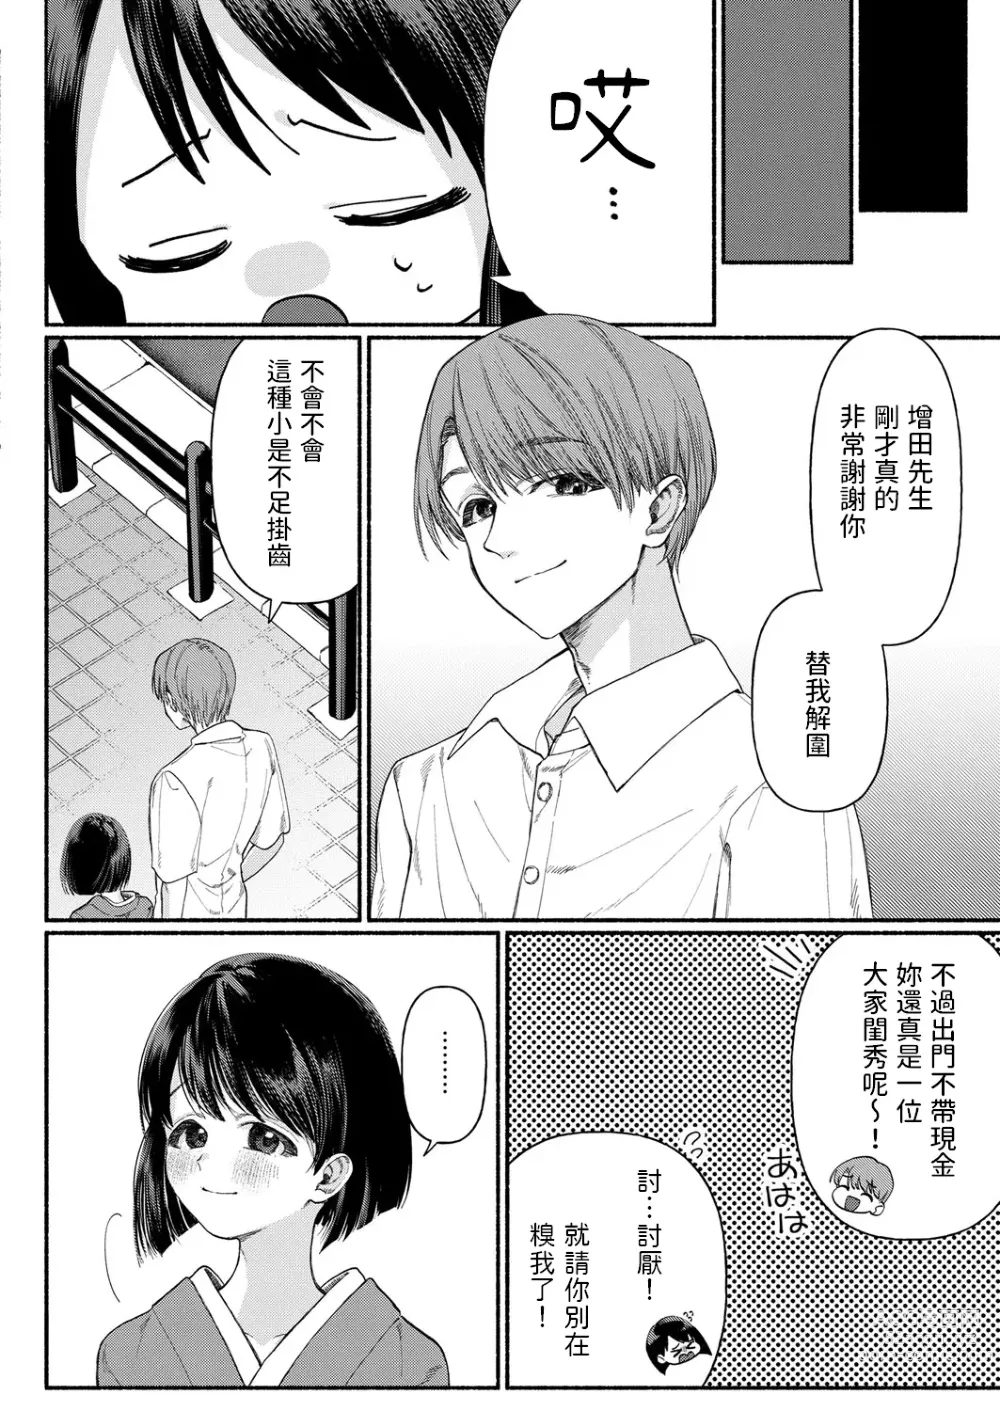 Page 2 of manga Hakoiri Musume wa Pet ni Ochiru -Zenpen-